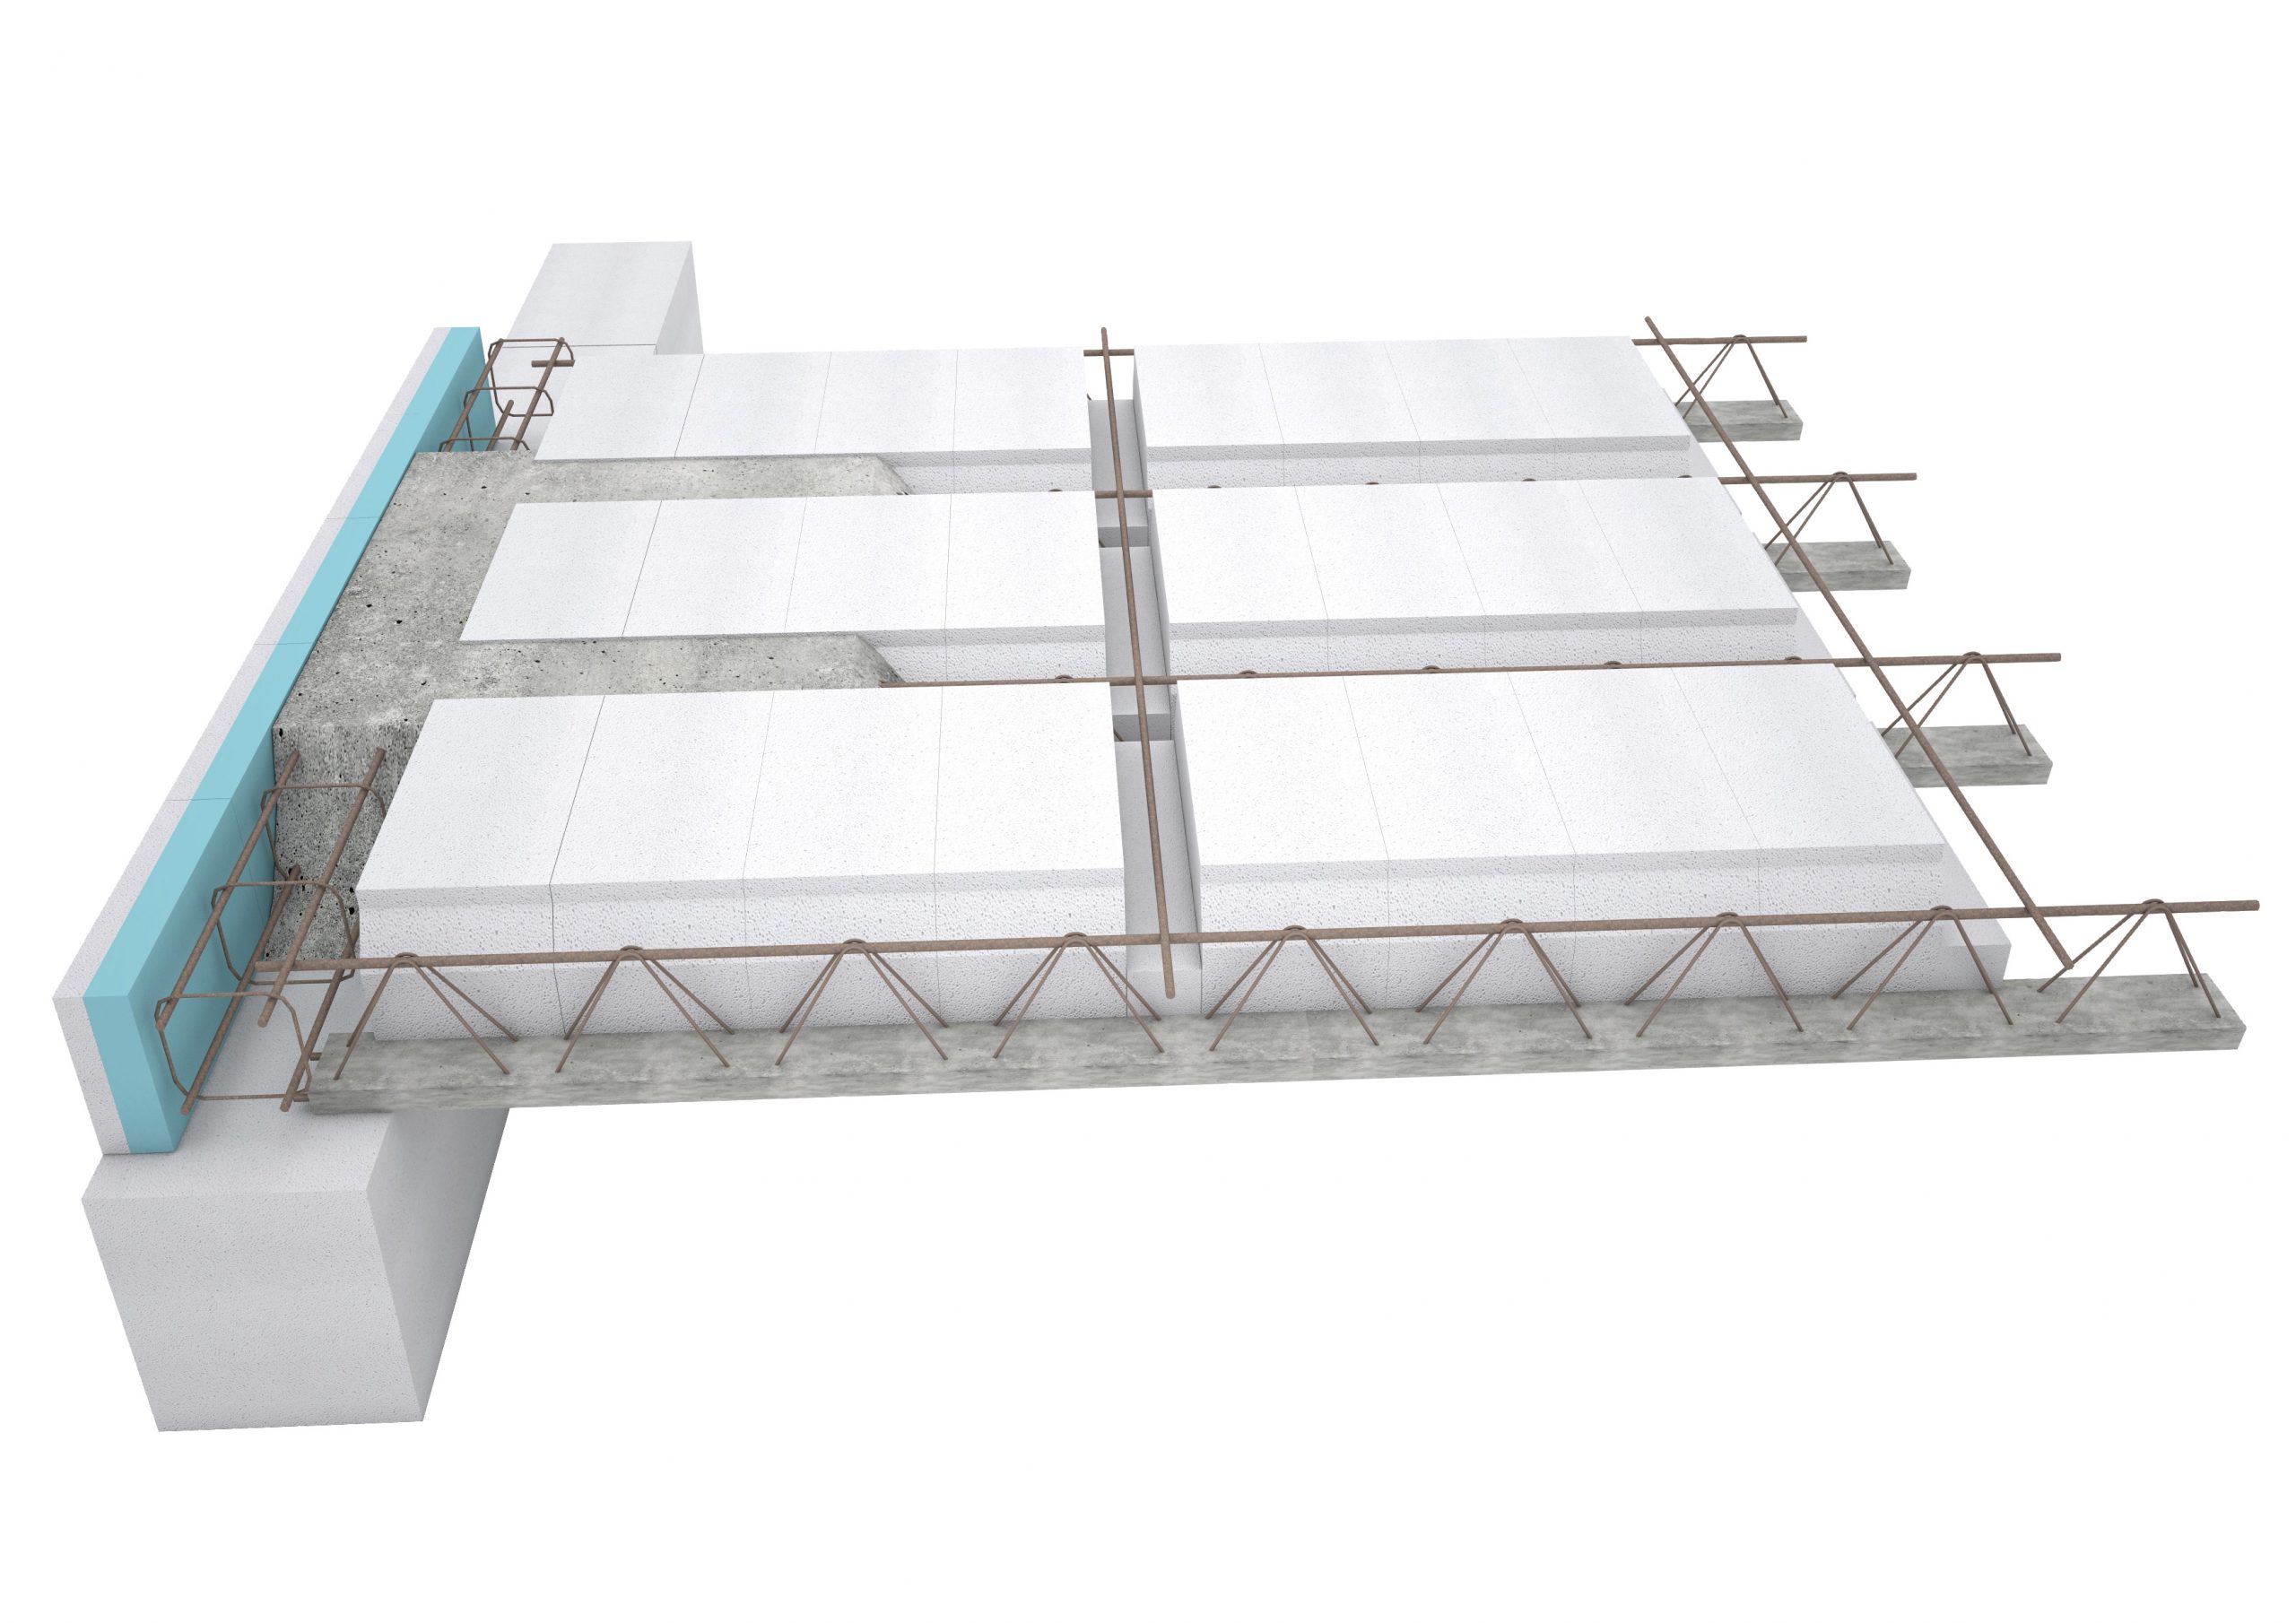 Strop Ytong Ekonom prestavuje najpresnejšiu konštrukciu bez ďalšieho vyrovnávania pred montážou podlahových vrstiev. Dodáva sa v hrúbkach 200 a 250 mm.